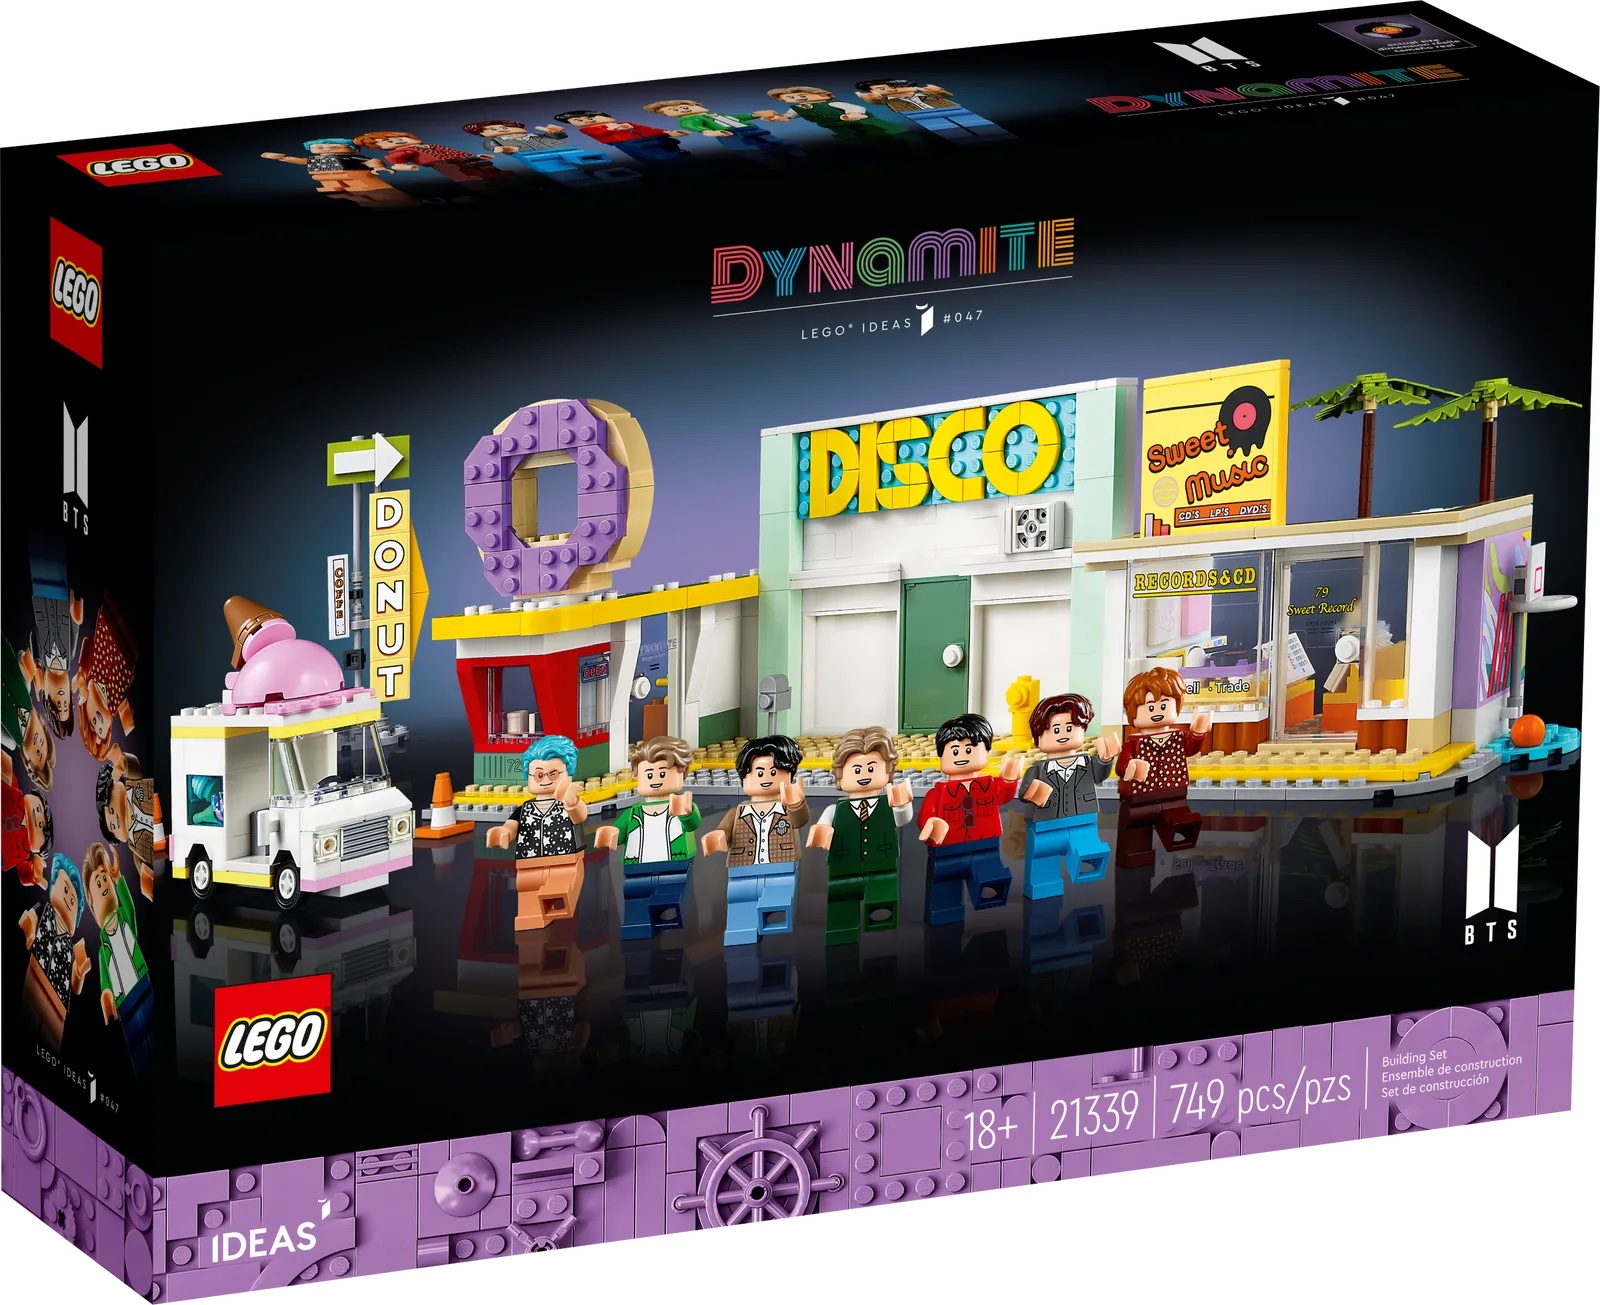 LEGO Ideas BTS Dynamite officieel aangekondigd